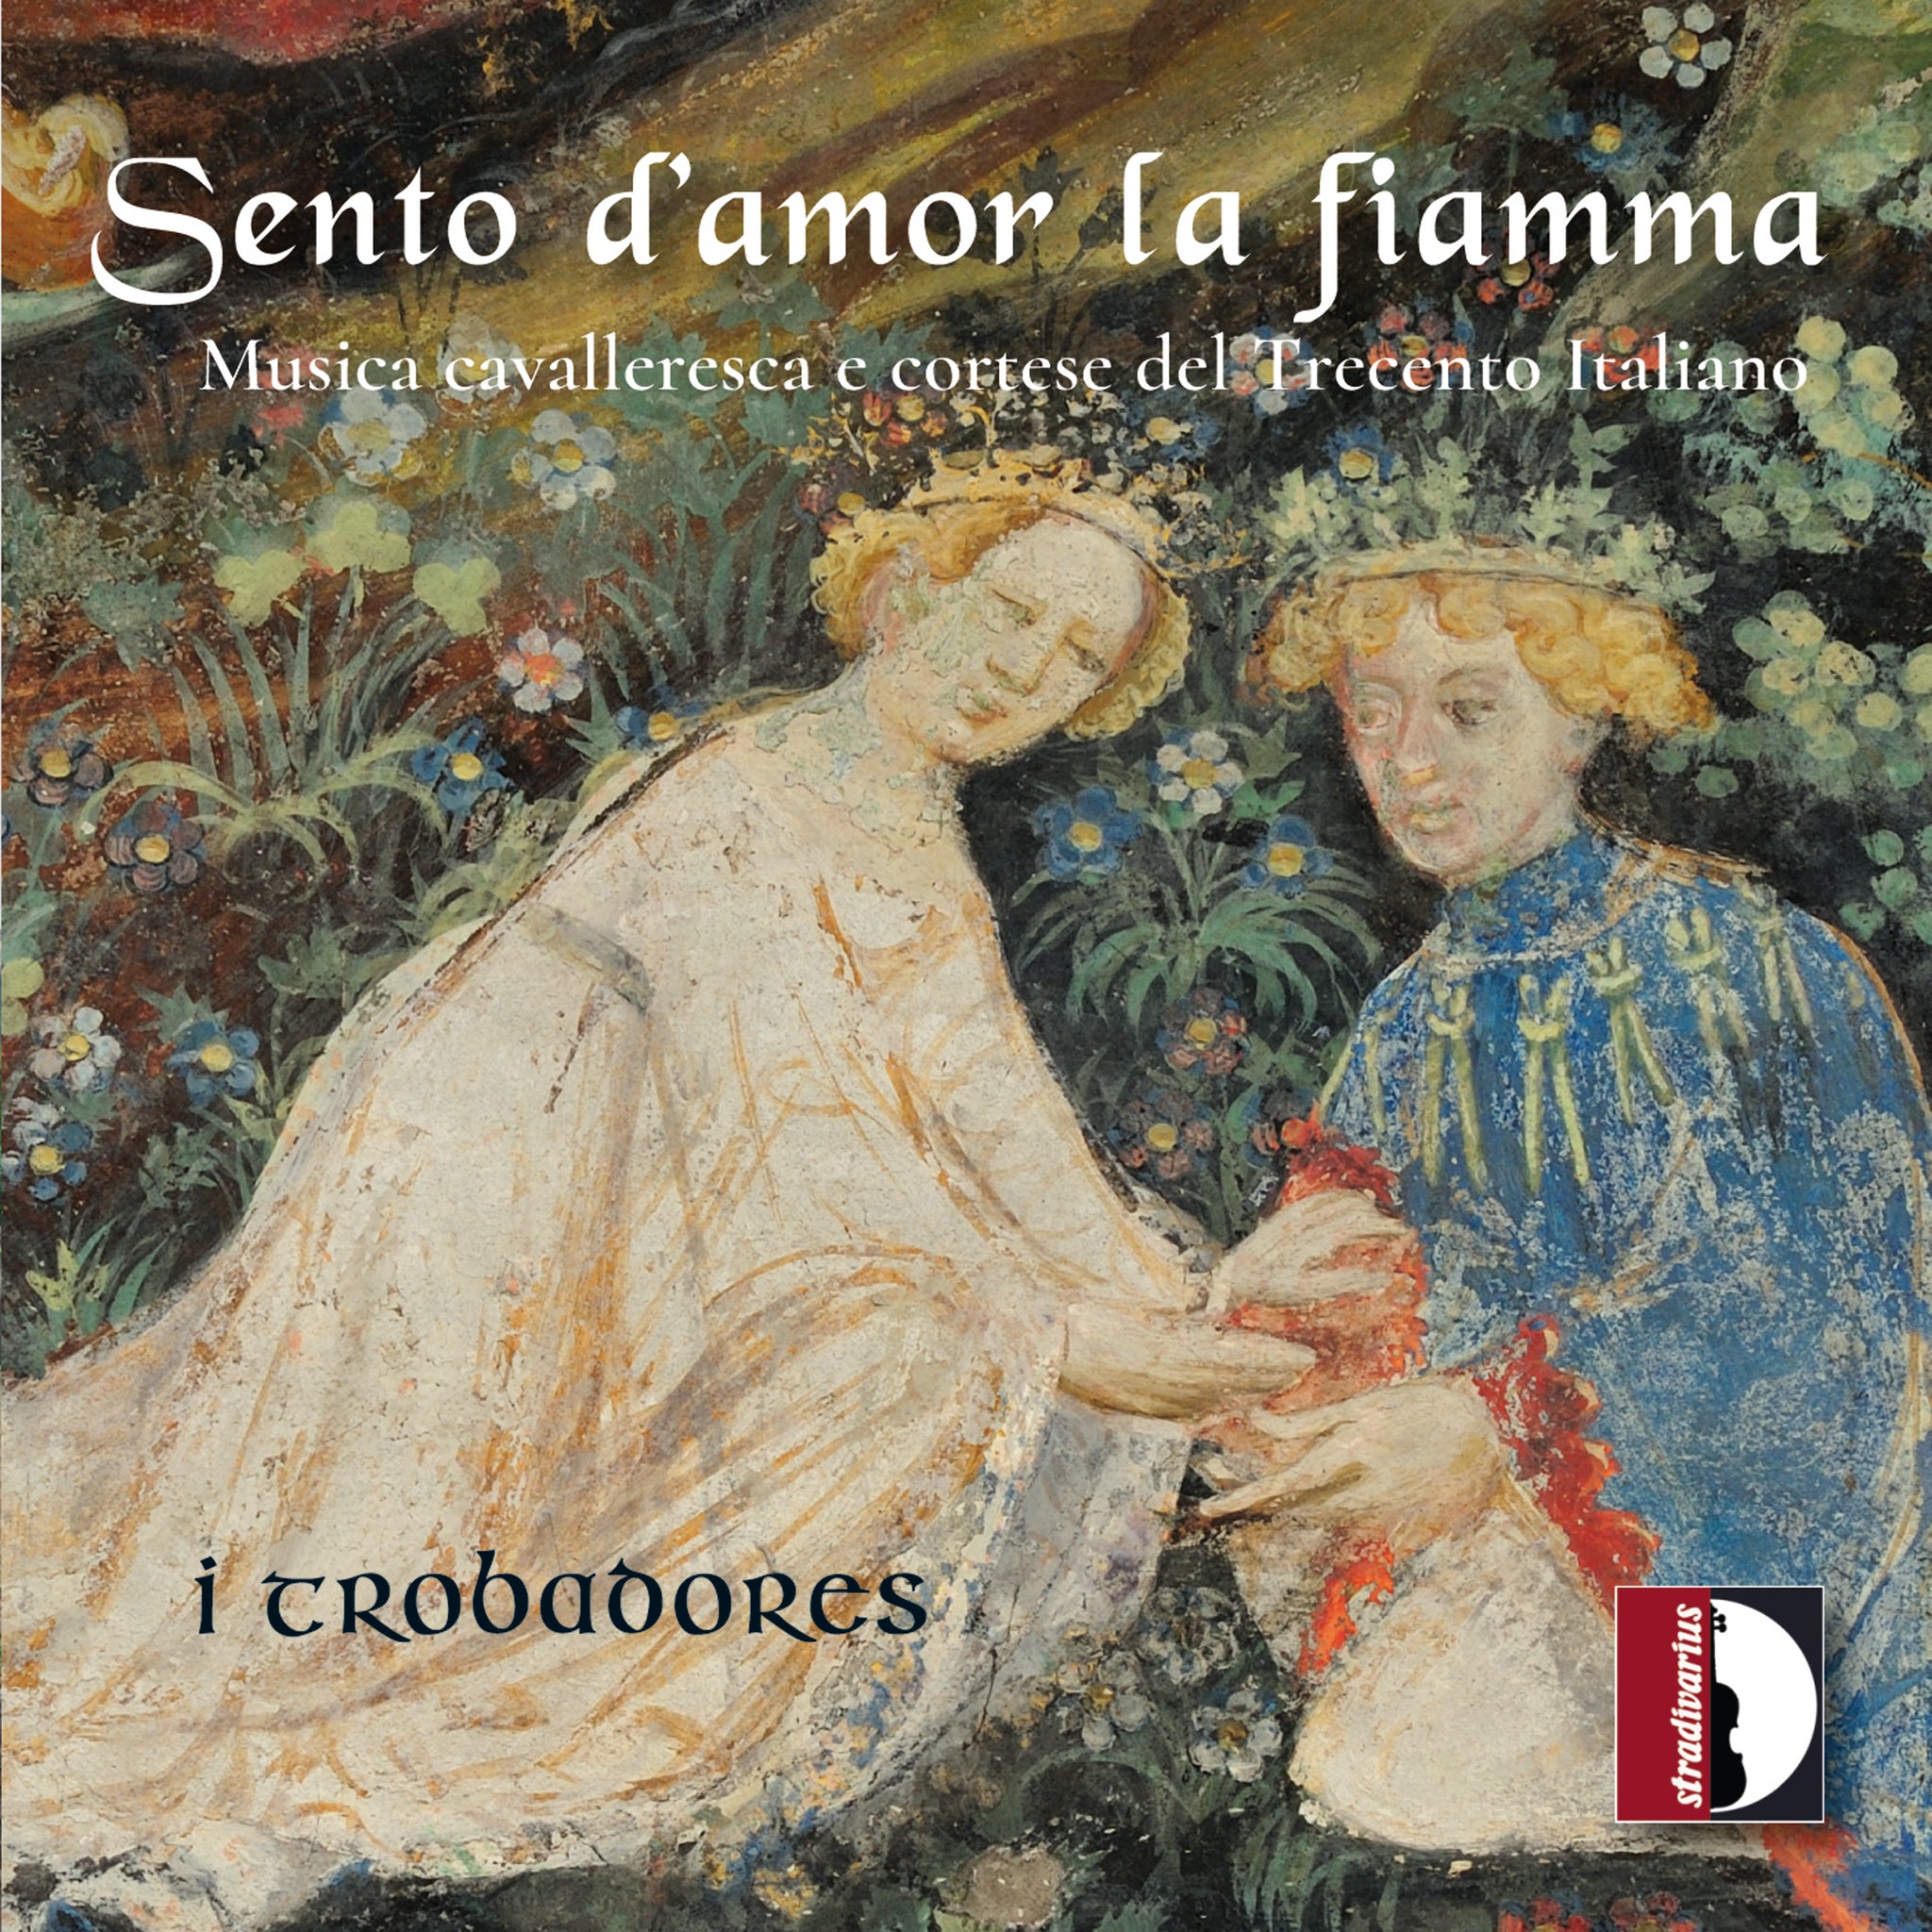 I Feel the Flame of Love: Italian 14th-Century Music / I Trobadores